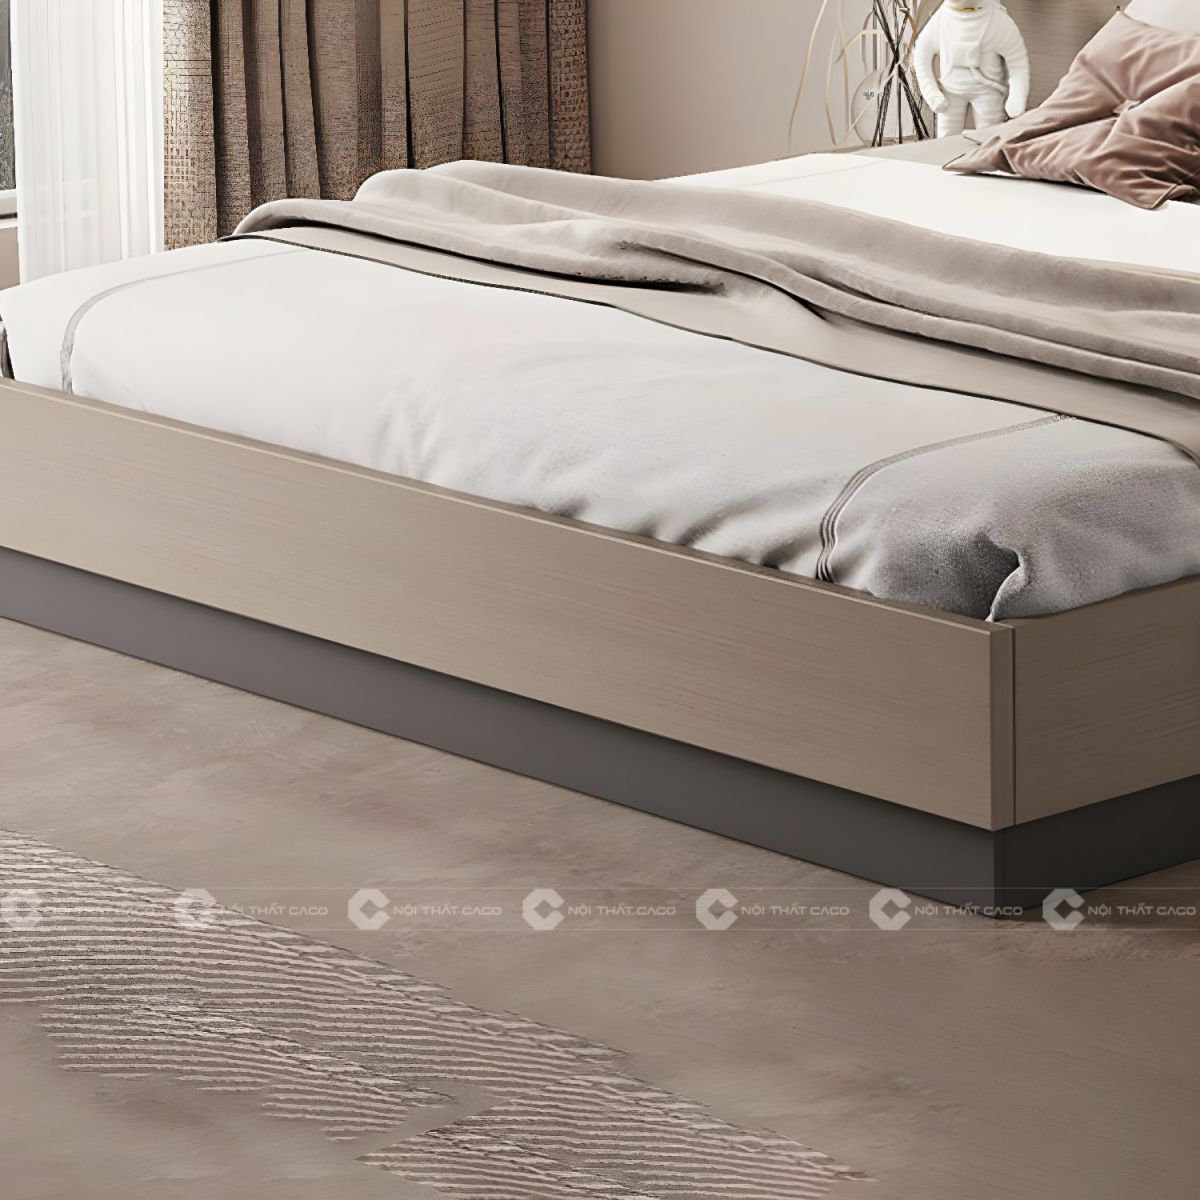 Giường ngủ gỗ công nghiệp với thiết kế tinh tế nhẹ nhàng